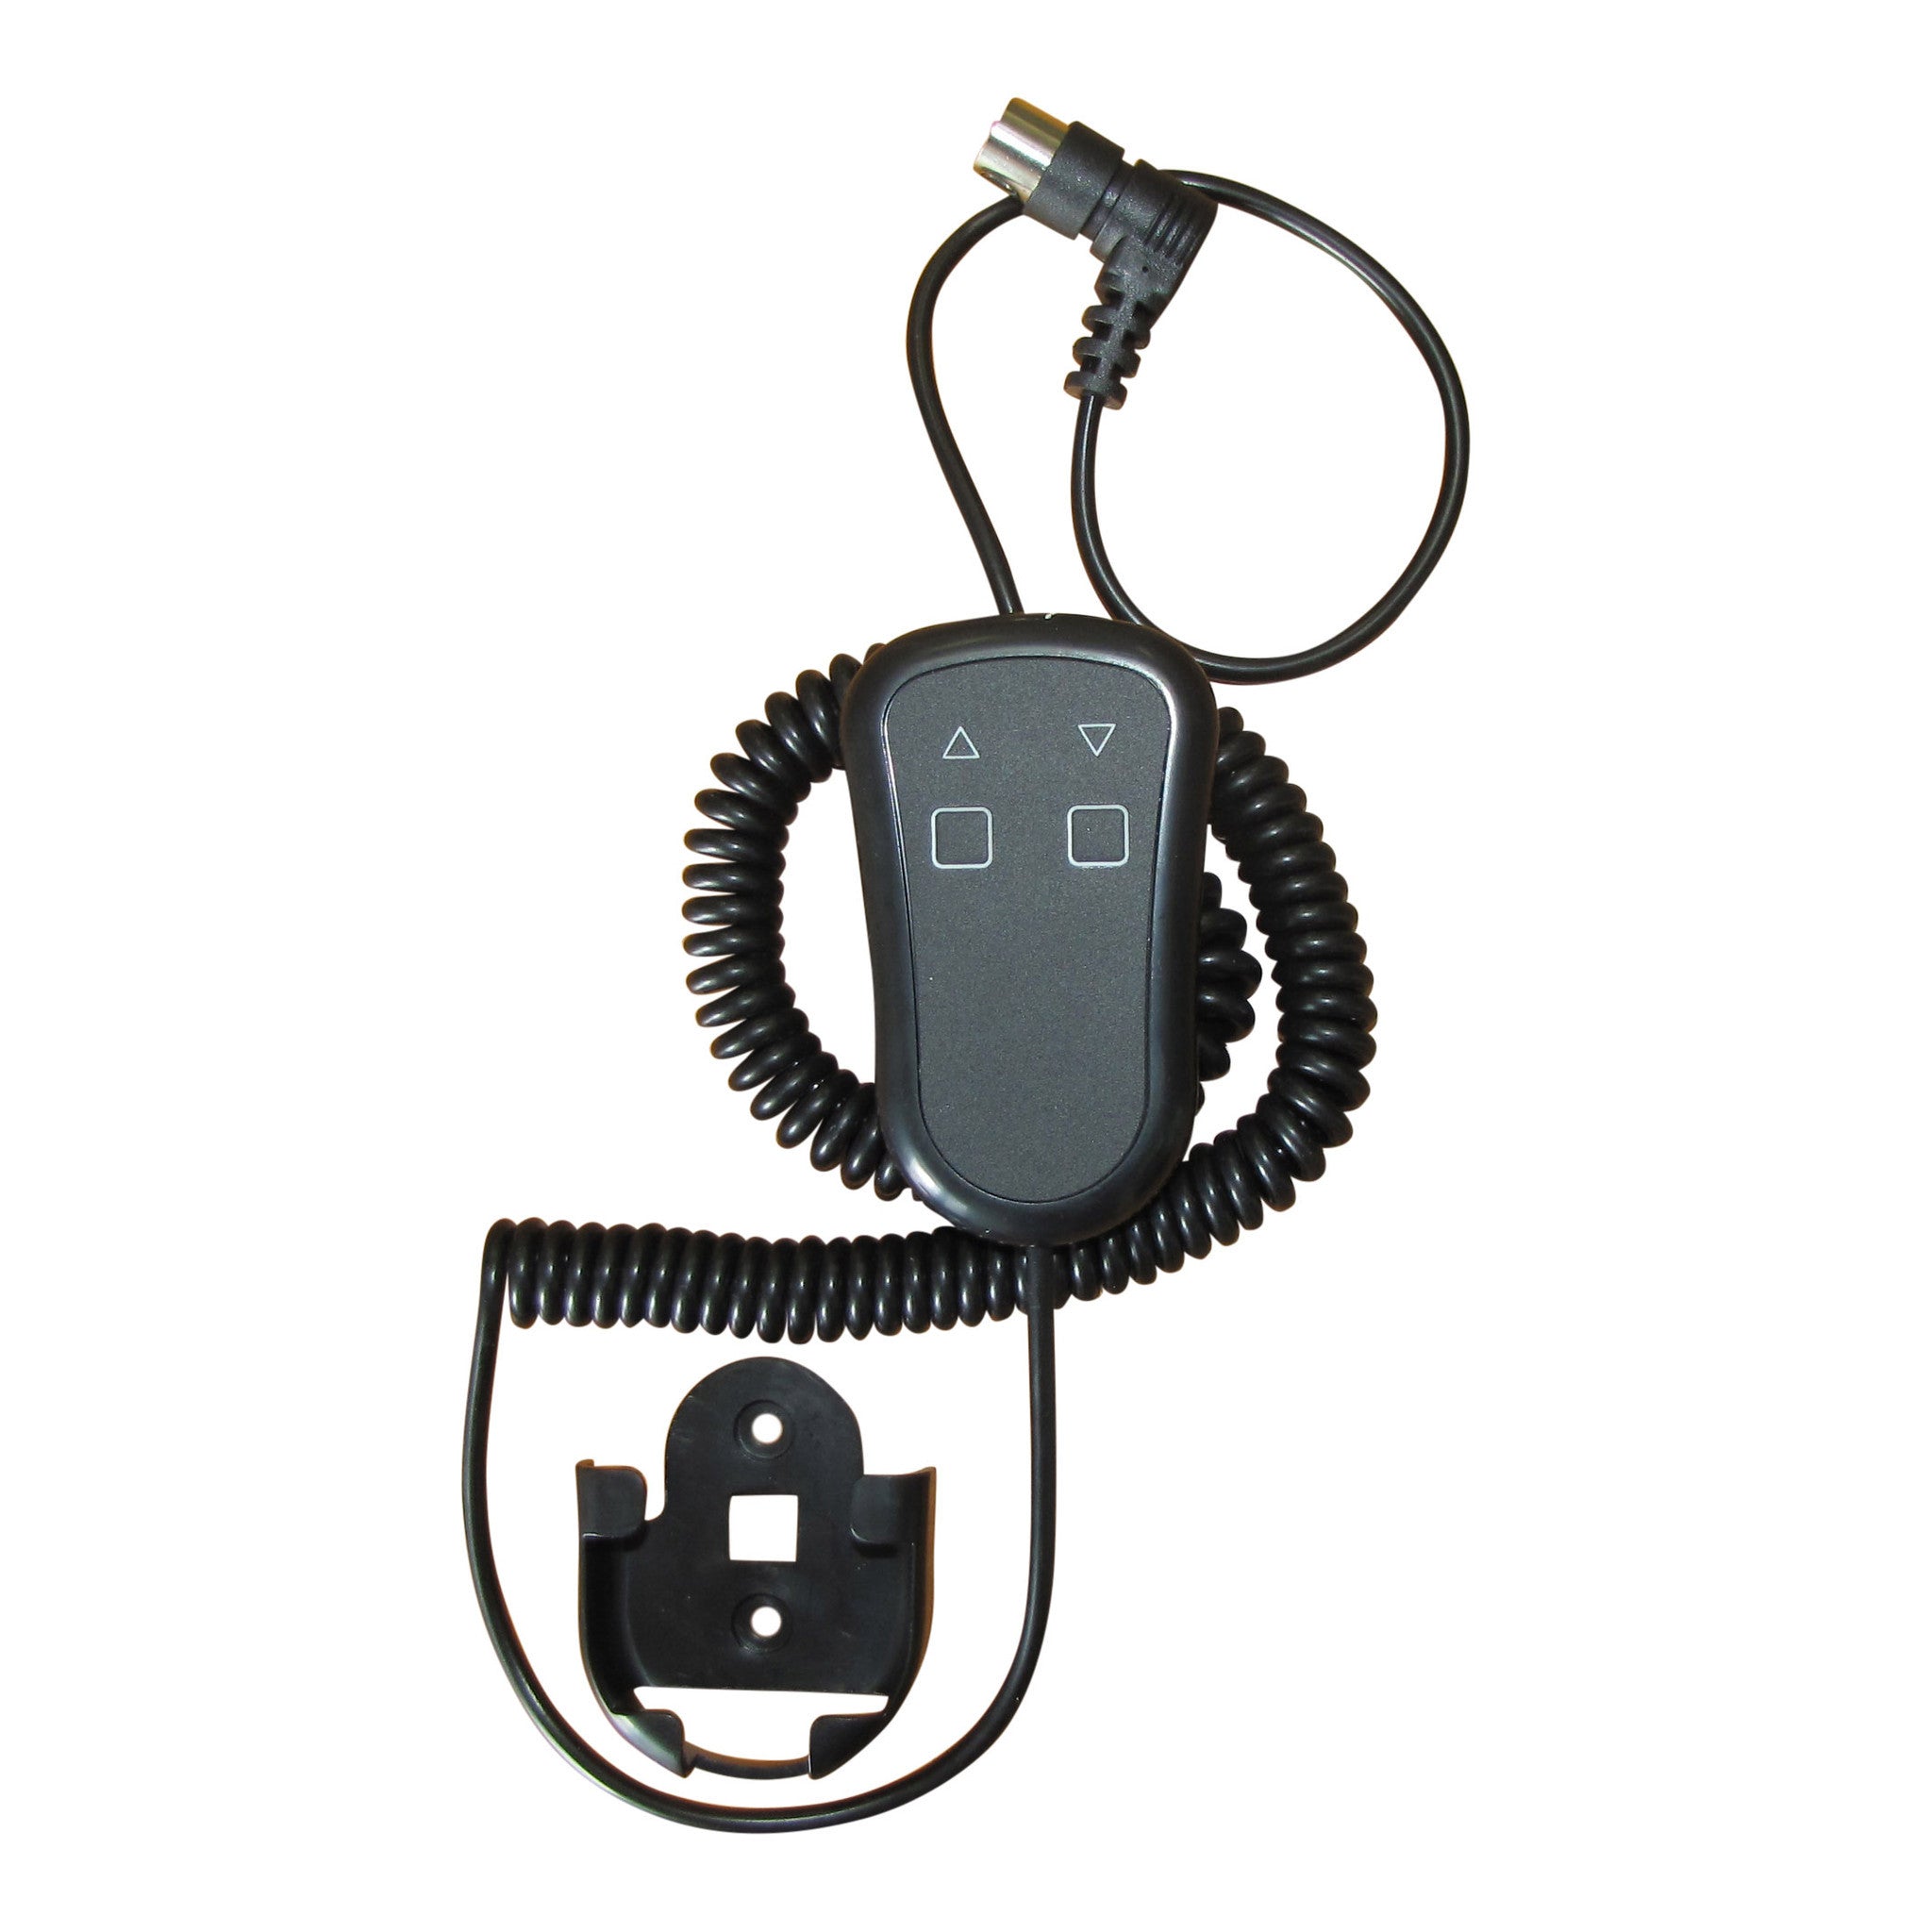 অ্যাকিউইটারগুলির জন্য হ্যান্ডহেল্ড তারযুক্ত নিয়ন্ত্রণ ব্যবস্থা - সিএসপিএস Product Image